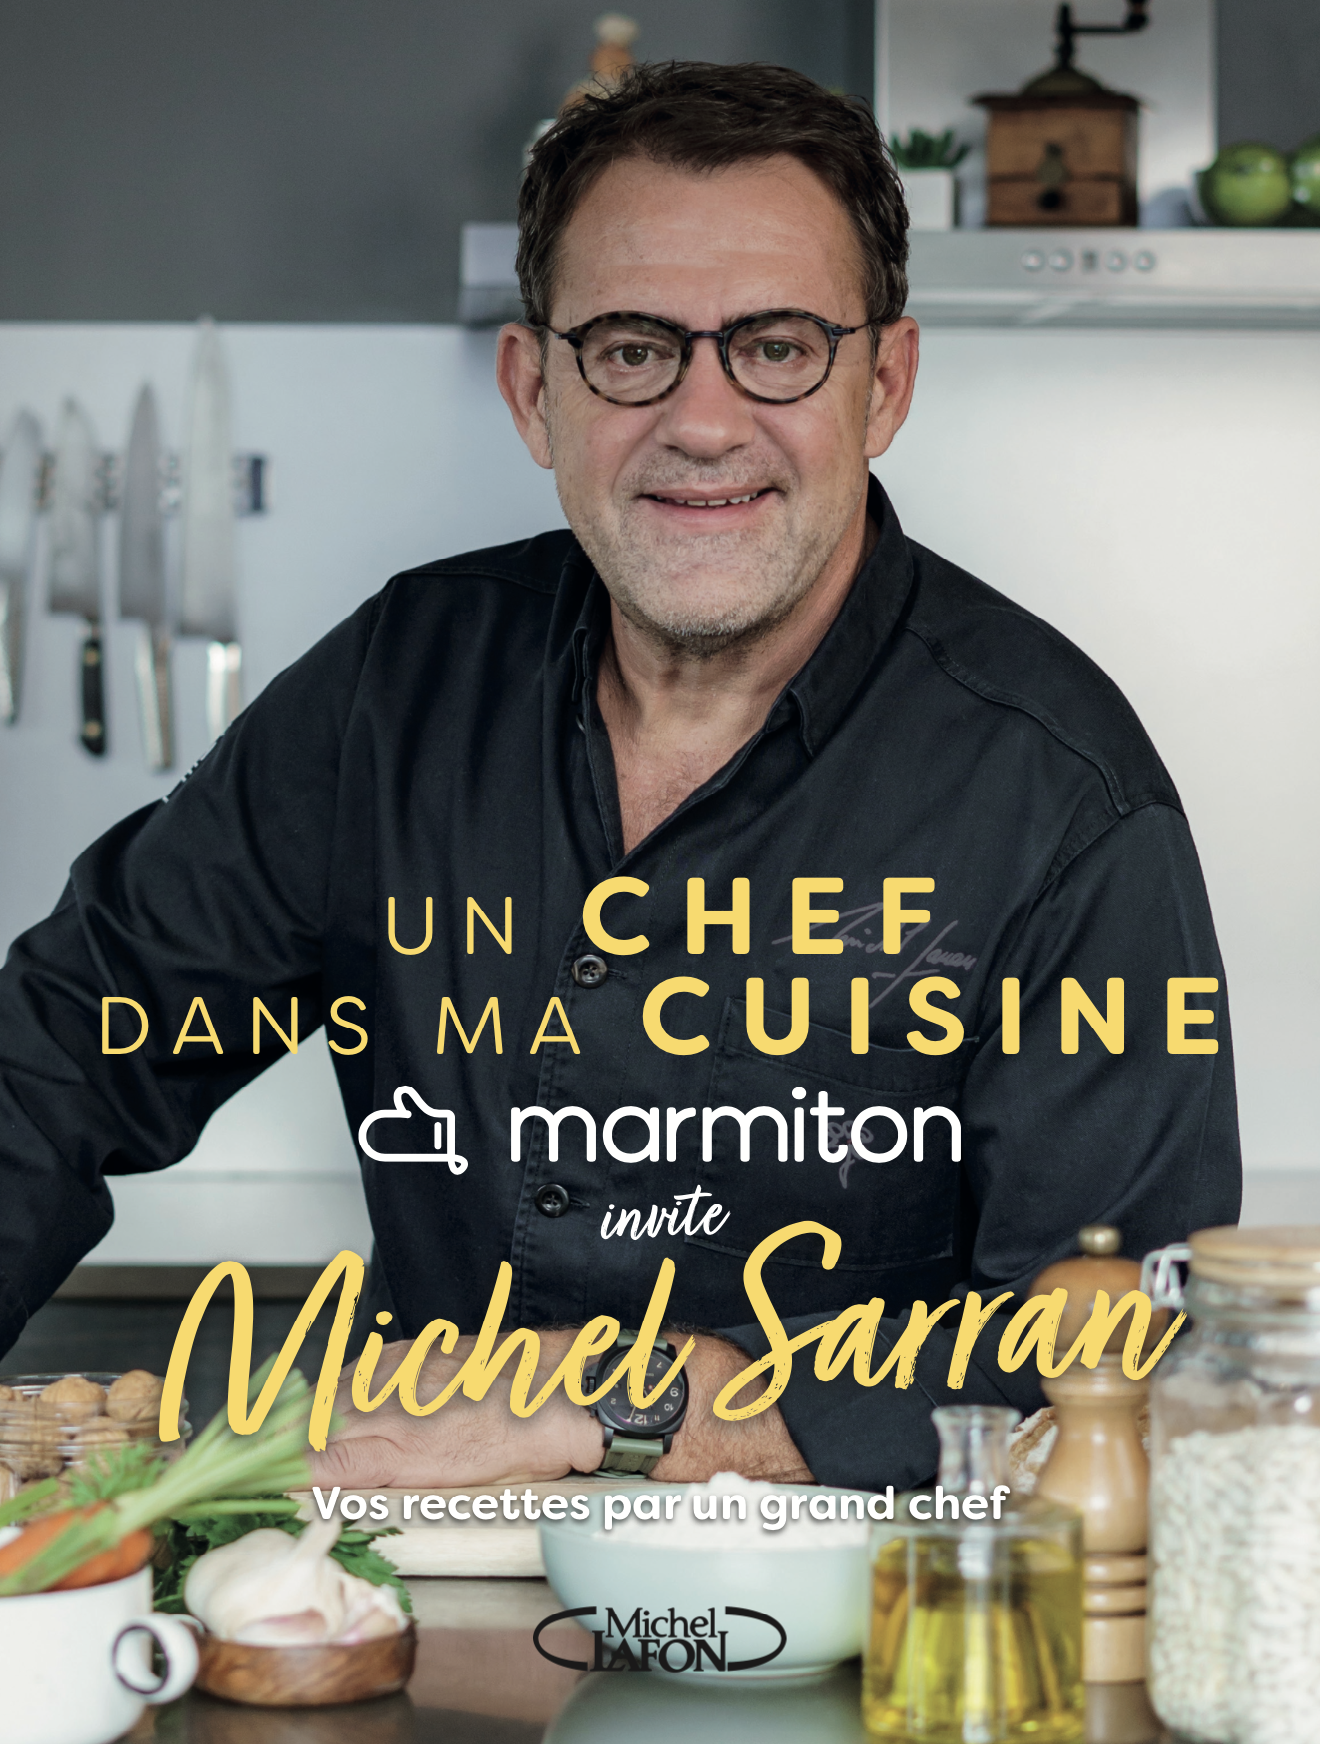 couverture de livre de Michel Sarran, marmiton, livre de cuisine